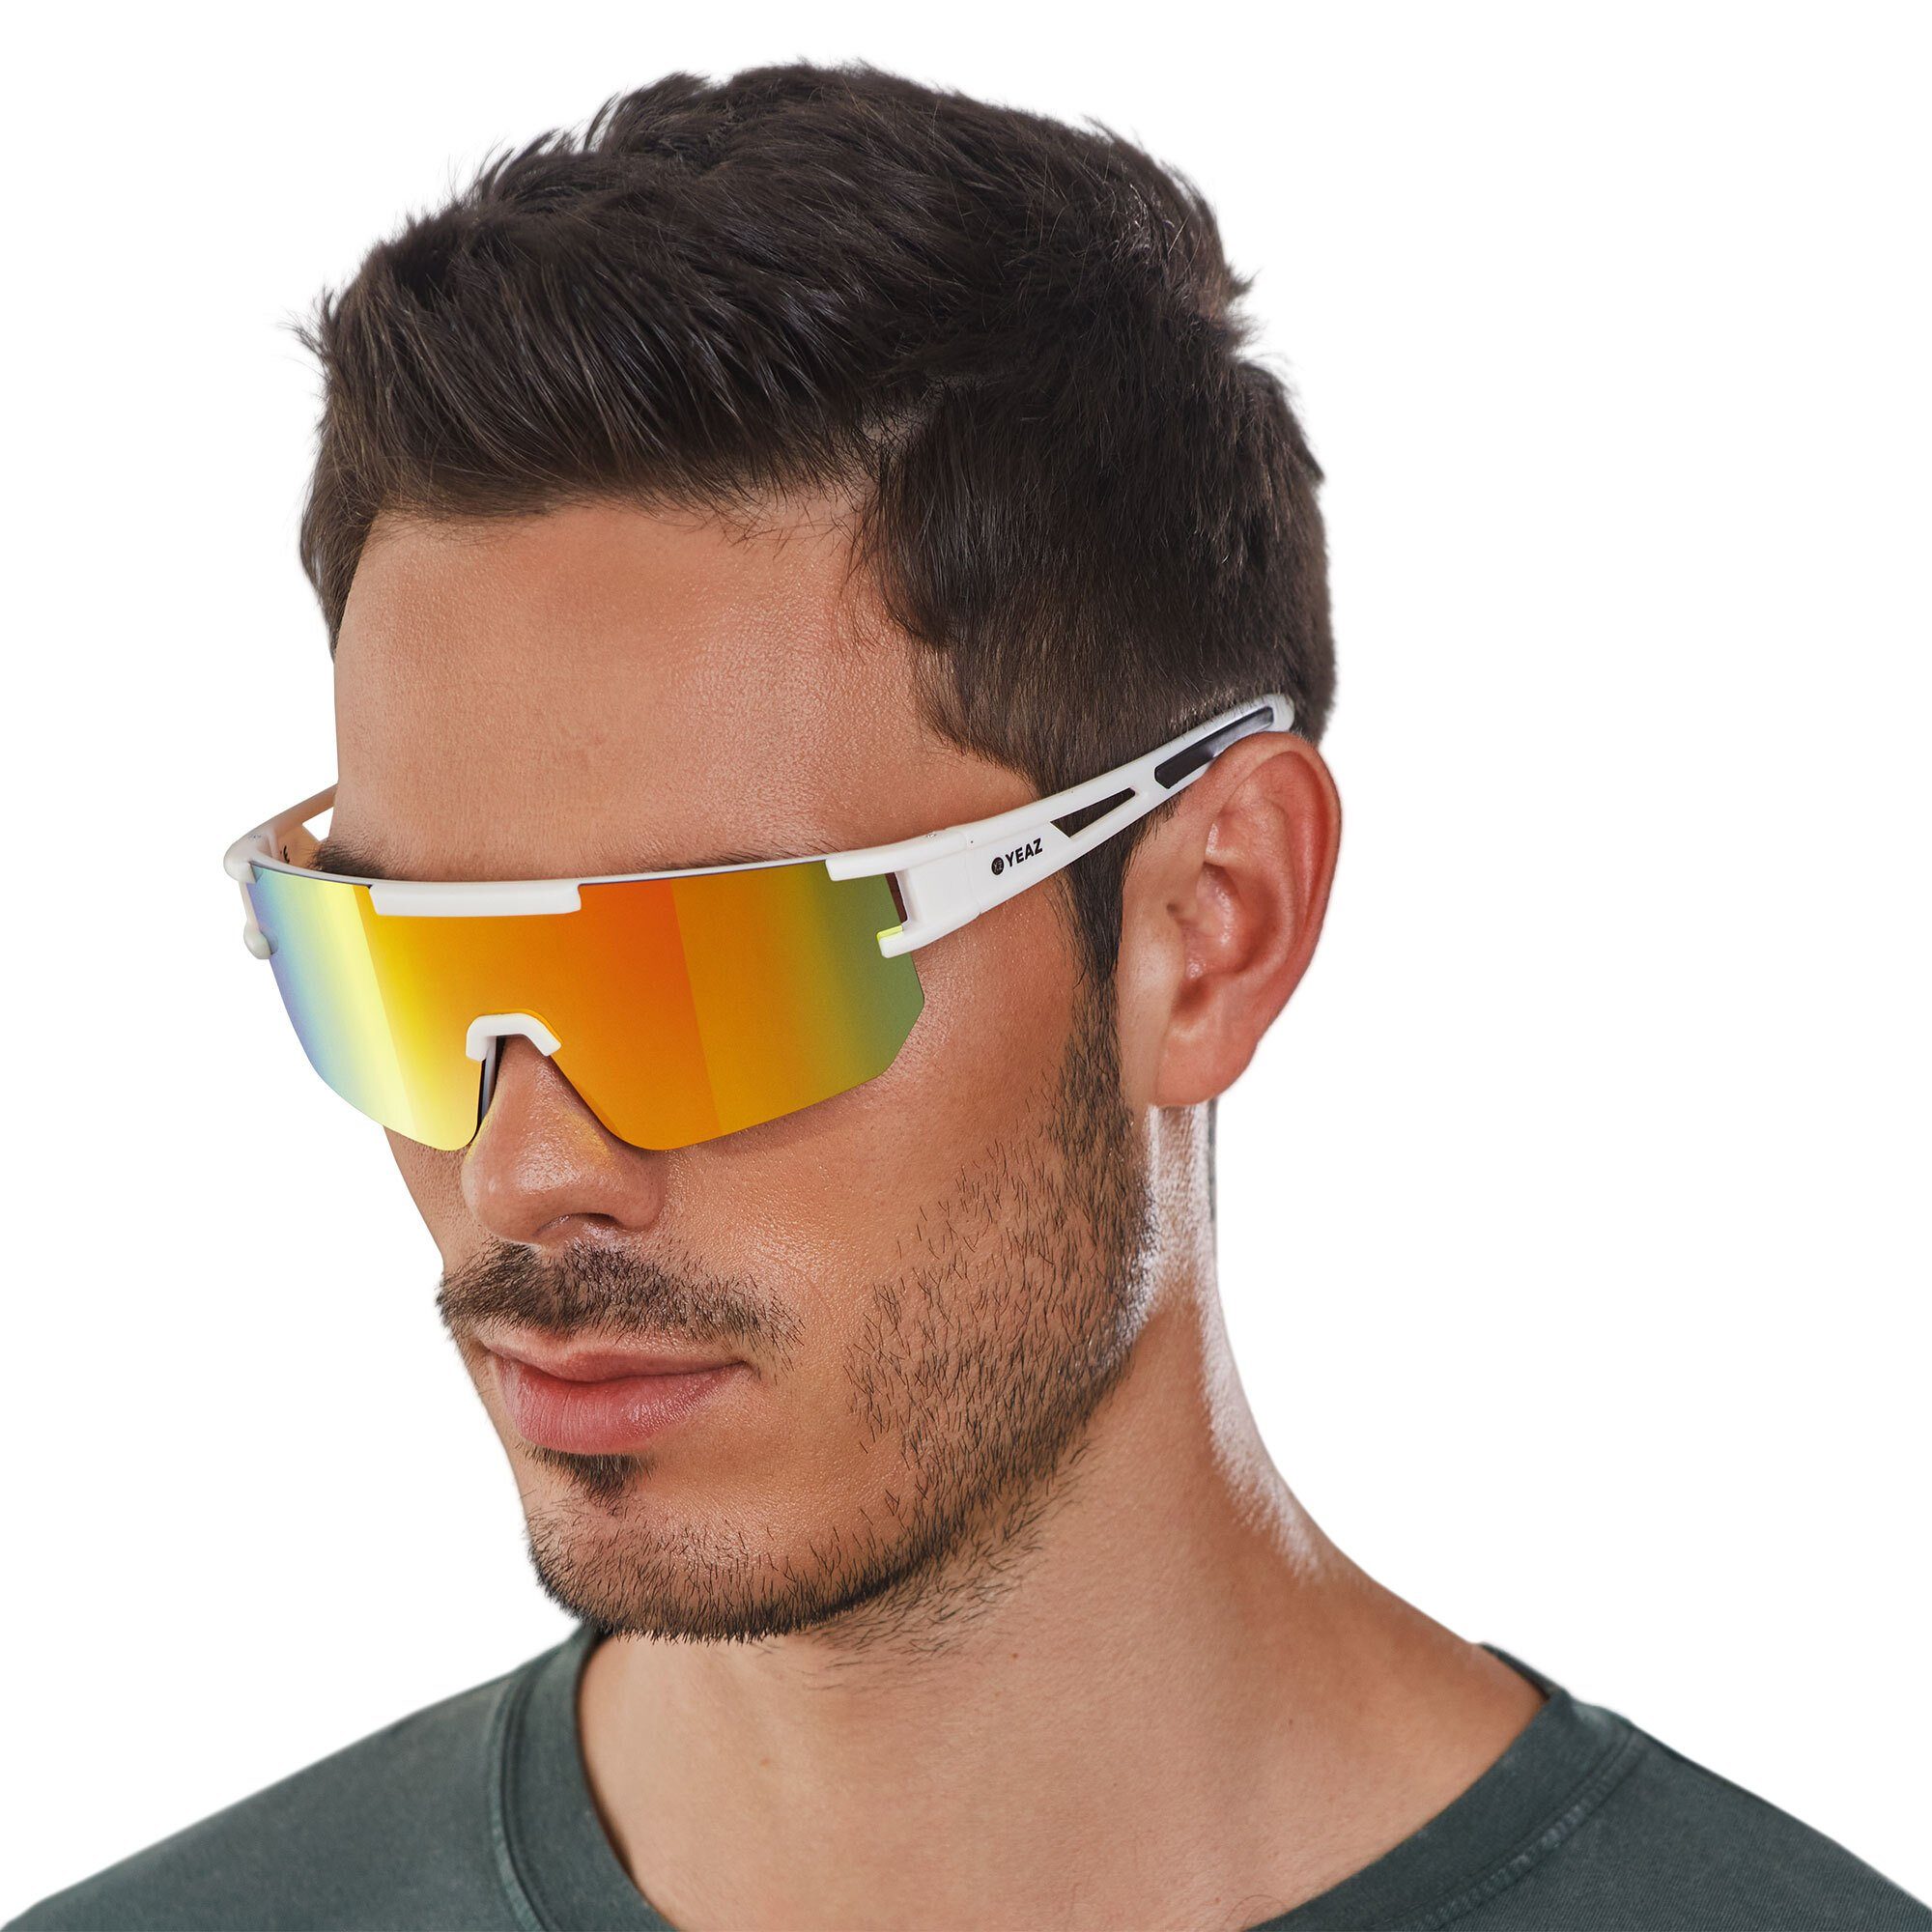 Sportbrille Sicht YEAZ red, SUNSPARK Schutz bei white/mango creme Guter sport-sonnenbrille optimierter